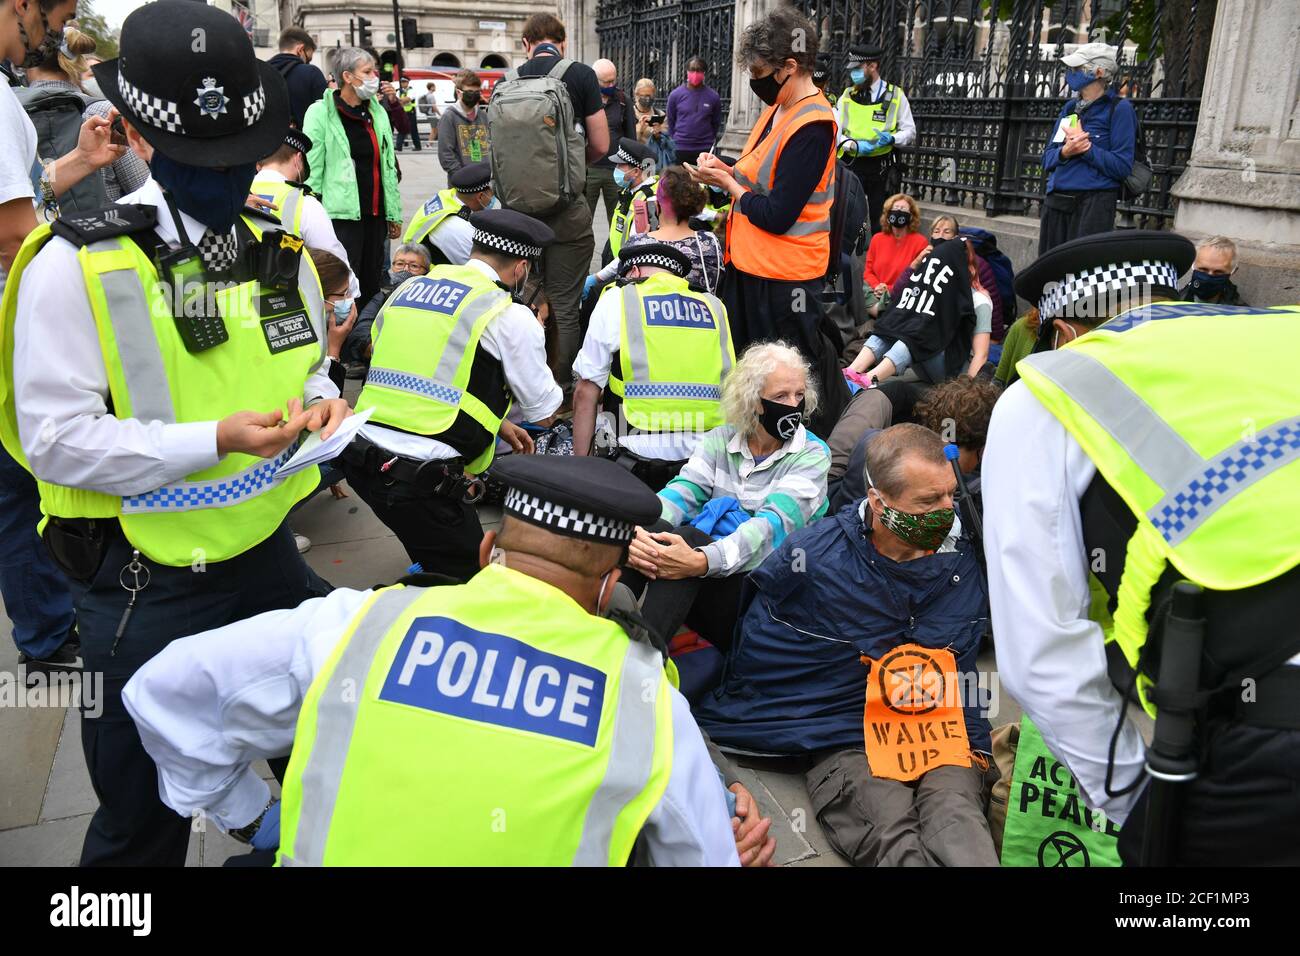 Les policiers parlent à des manifestants de la rébellion contre l'extinction qui organisent une manifestation assise à l'entrée de Carriage Gates du Parlement de Londres. Le groupe de campagne environnementale a prévu des événements qui se tiendront dans plusieurs sites de la capitale. Banque D'Images